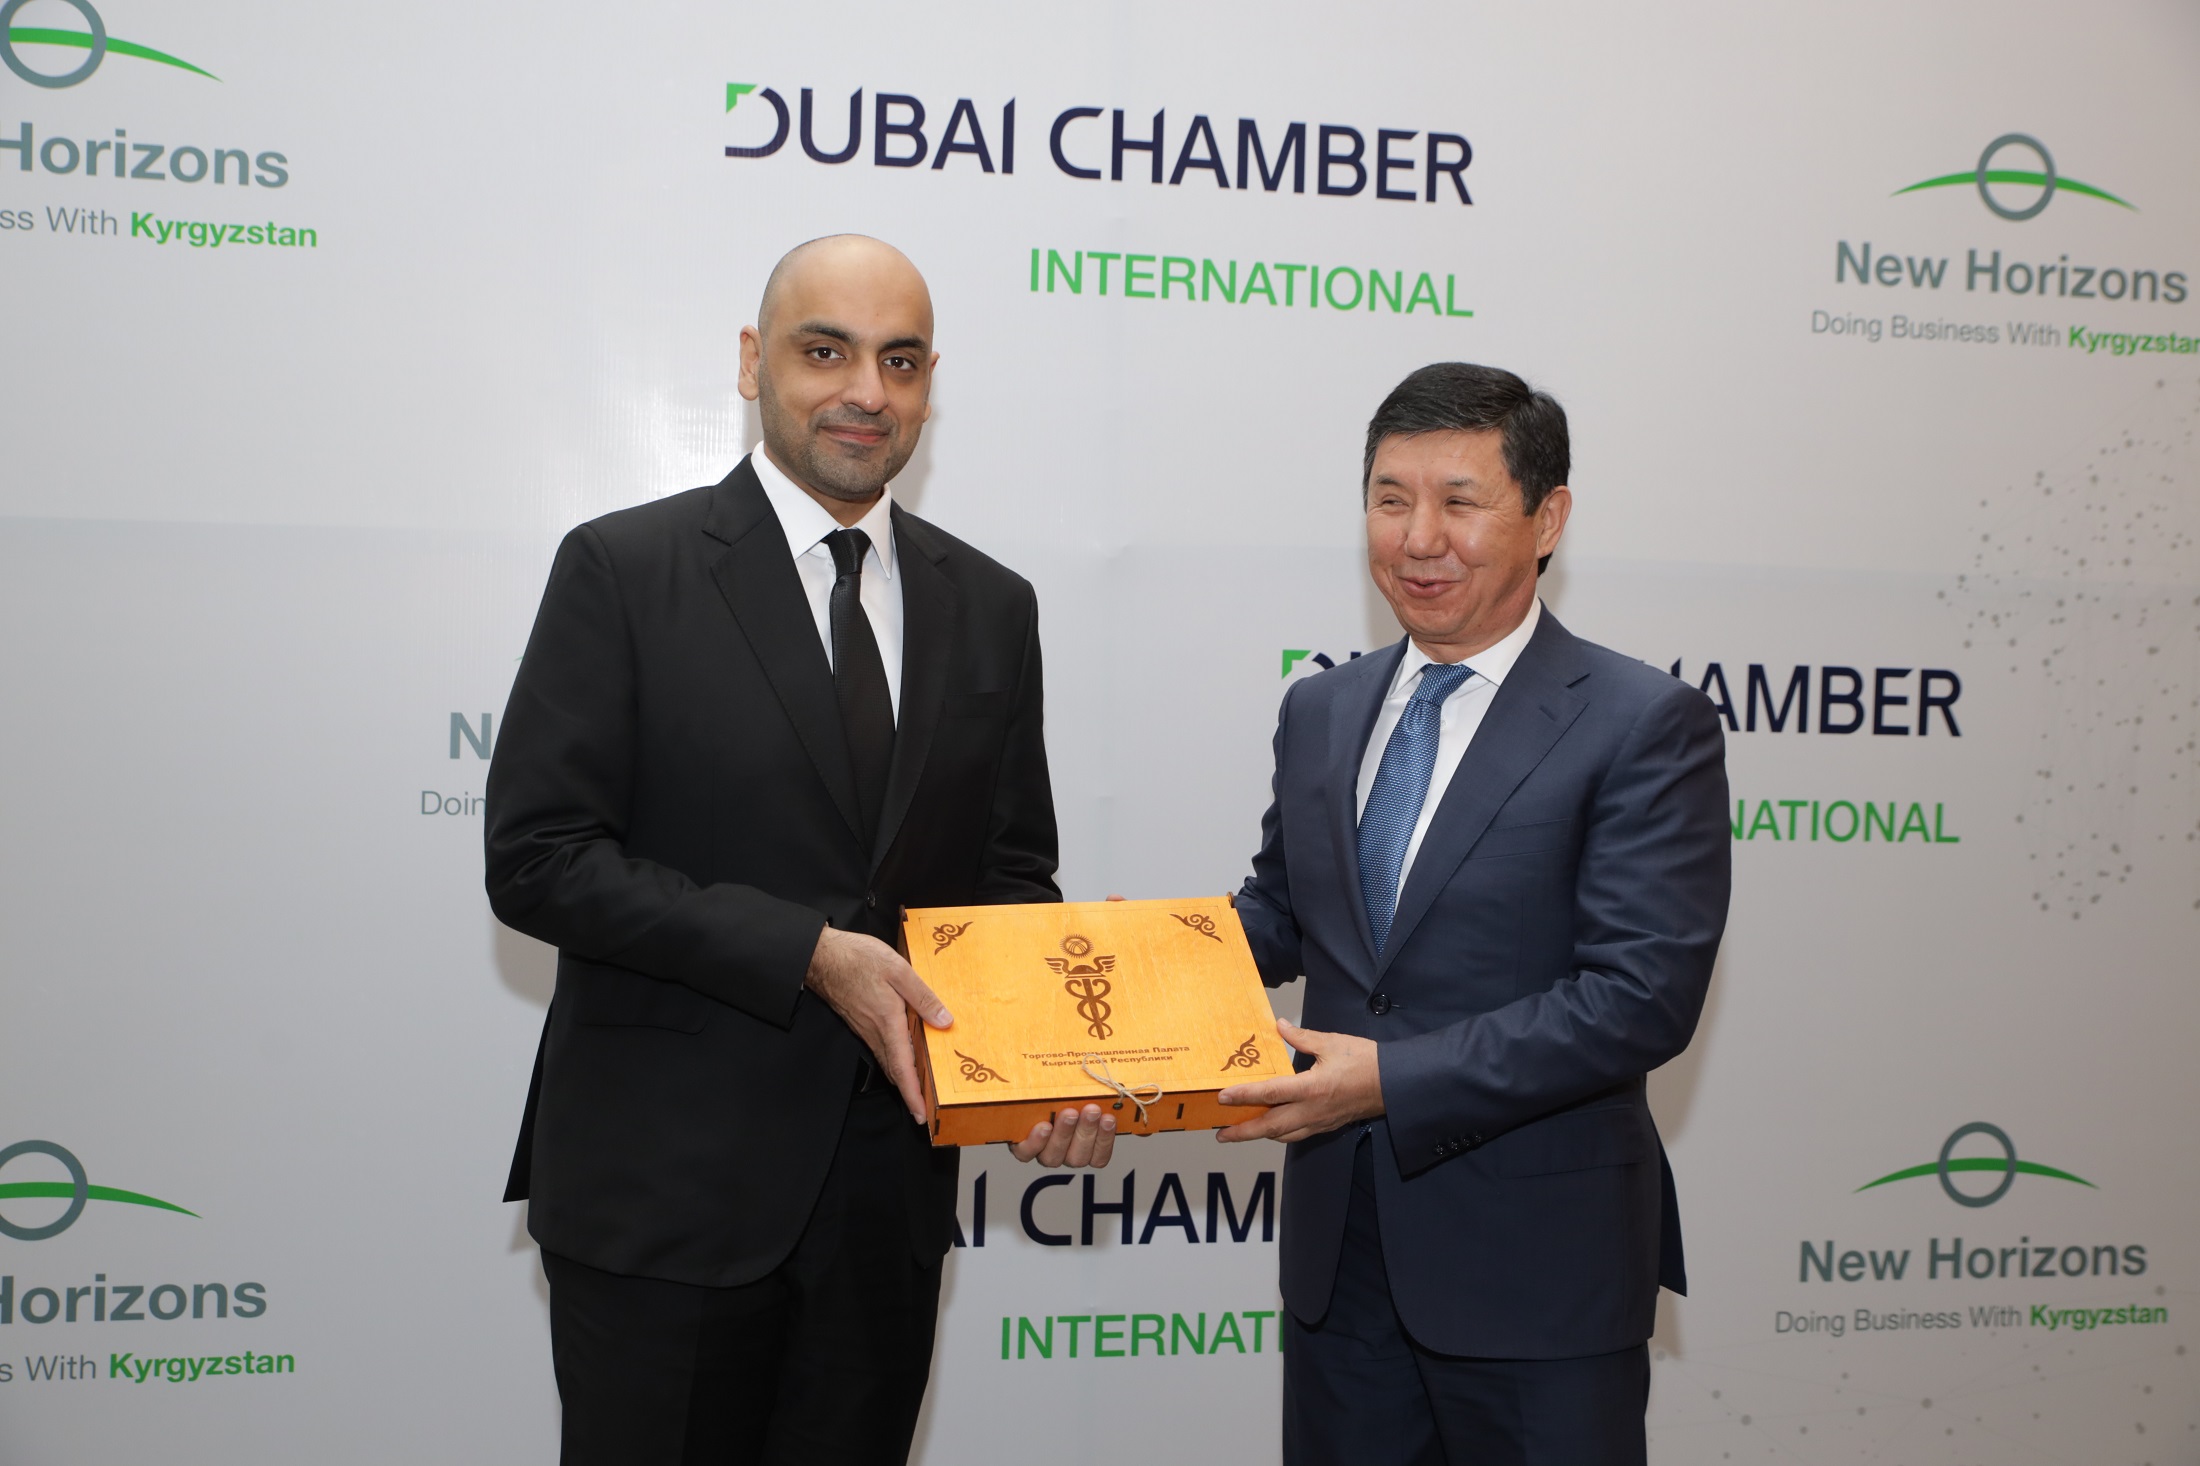 غرفة دبي العالمية تختتم بعثتها التجارية إلى آسيا الوسطى بتنظيم منتدى اقتصادي ولقاءات أعمال ثنائية في قيرغيزستان لدعم توسع شركات الإمارة